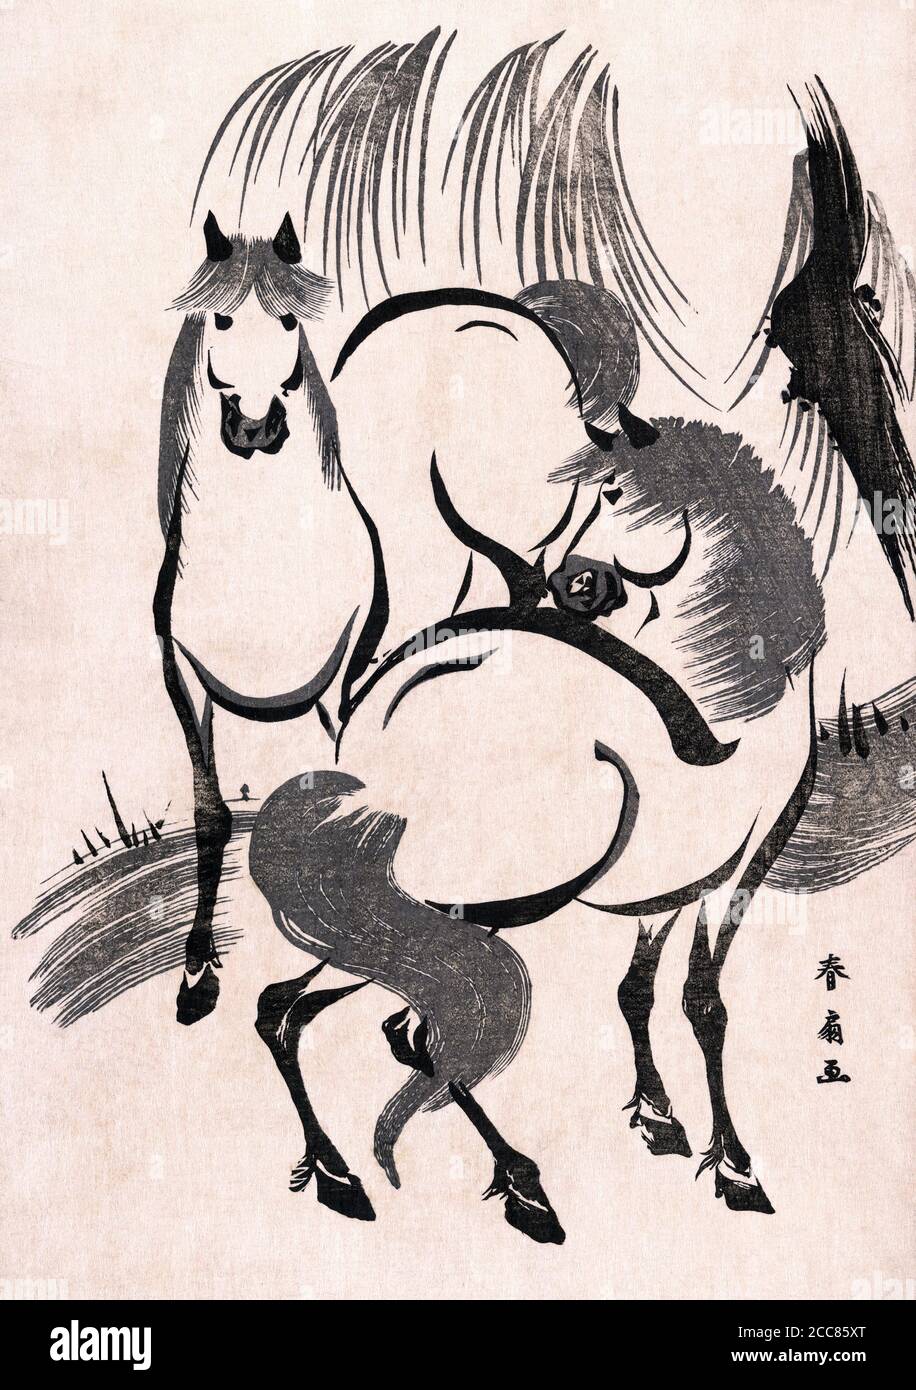 Japon: 'Chevaux sous un saule'. Imprimé bois par Katsukawa Shunsen (1762-1830), ch. 1804-1818. Katsukawa Shunsen (1762-1830), également connu sous le nom de Shunko II, était un concepteur de livres et de gravures japonaises sur bois de style ukiyo-e. Shunsen est surtout connu pour ses scènes de genre, ses paysages et ses reproductions de belles femmes. Banque D'Images